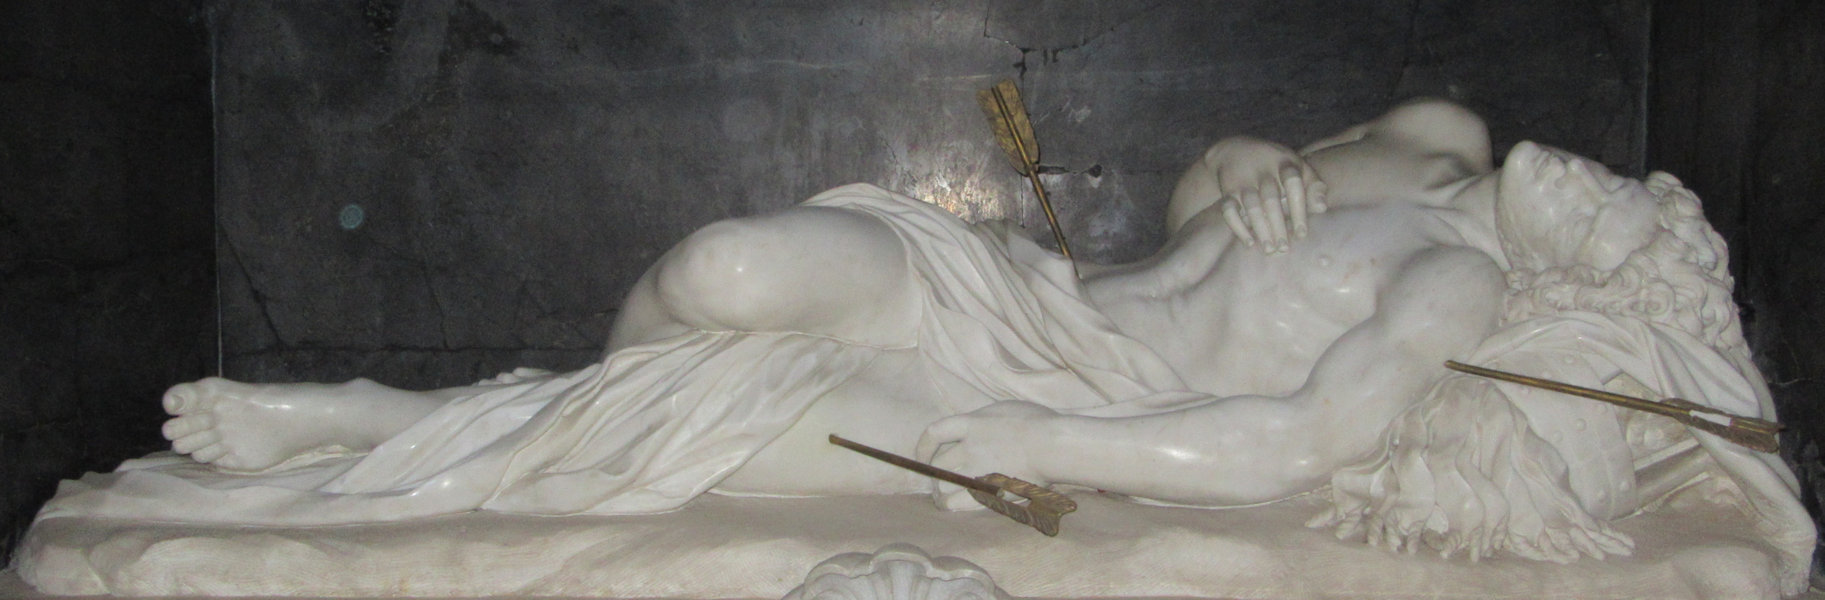 Giuseppe Giorgetti, Statue am Grab, 1672, in der Kirche San Sebastiano in Rom